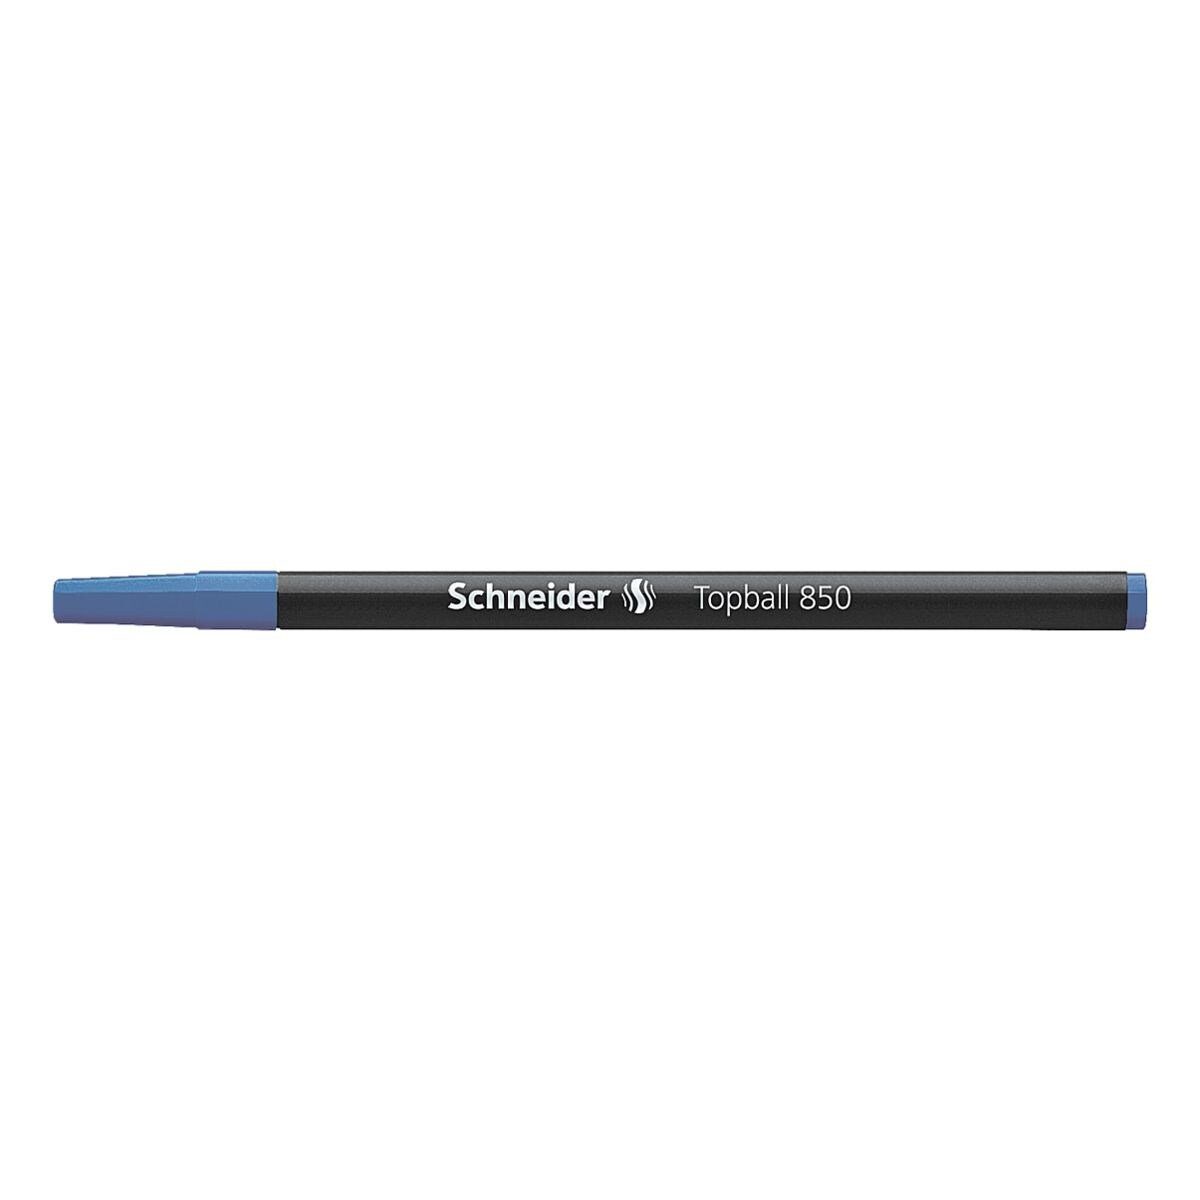 0,5 Schneider Strichstärke: Edelstahl-Konusspitze, Tintenroller blau 850, mm (M) Topball Mine mit